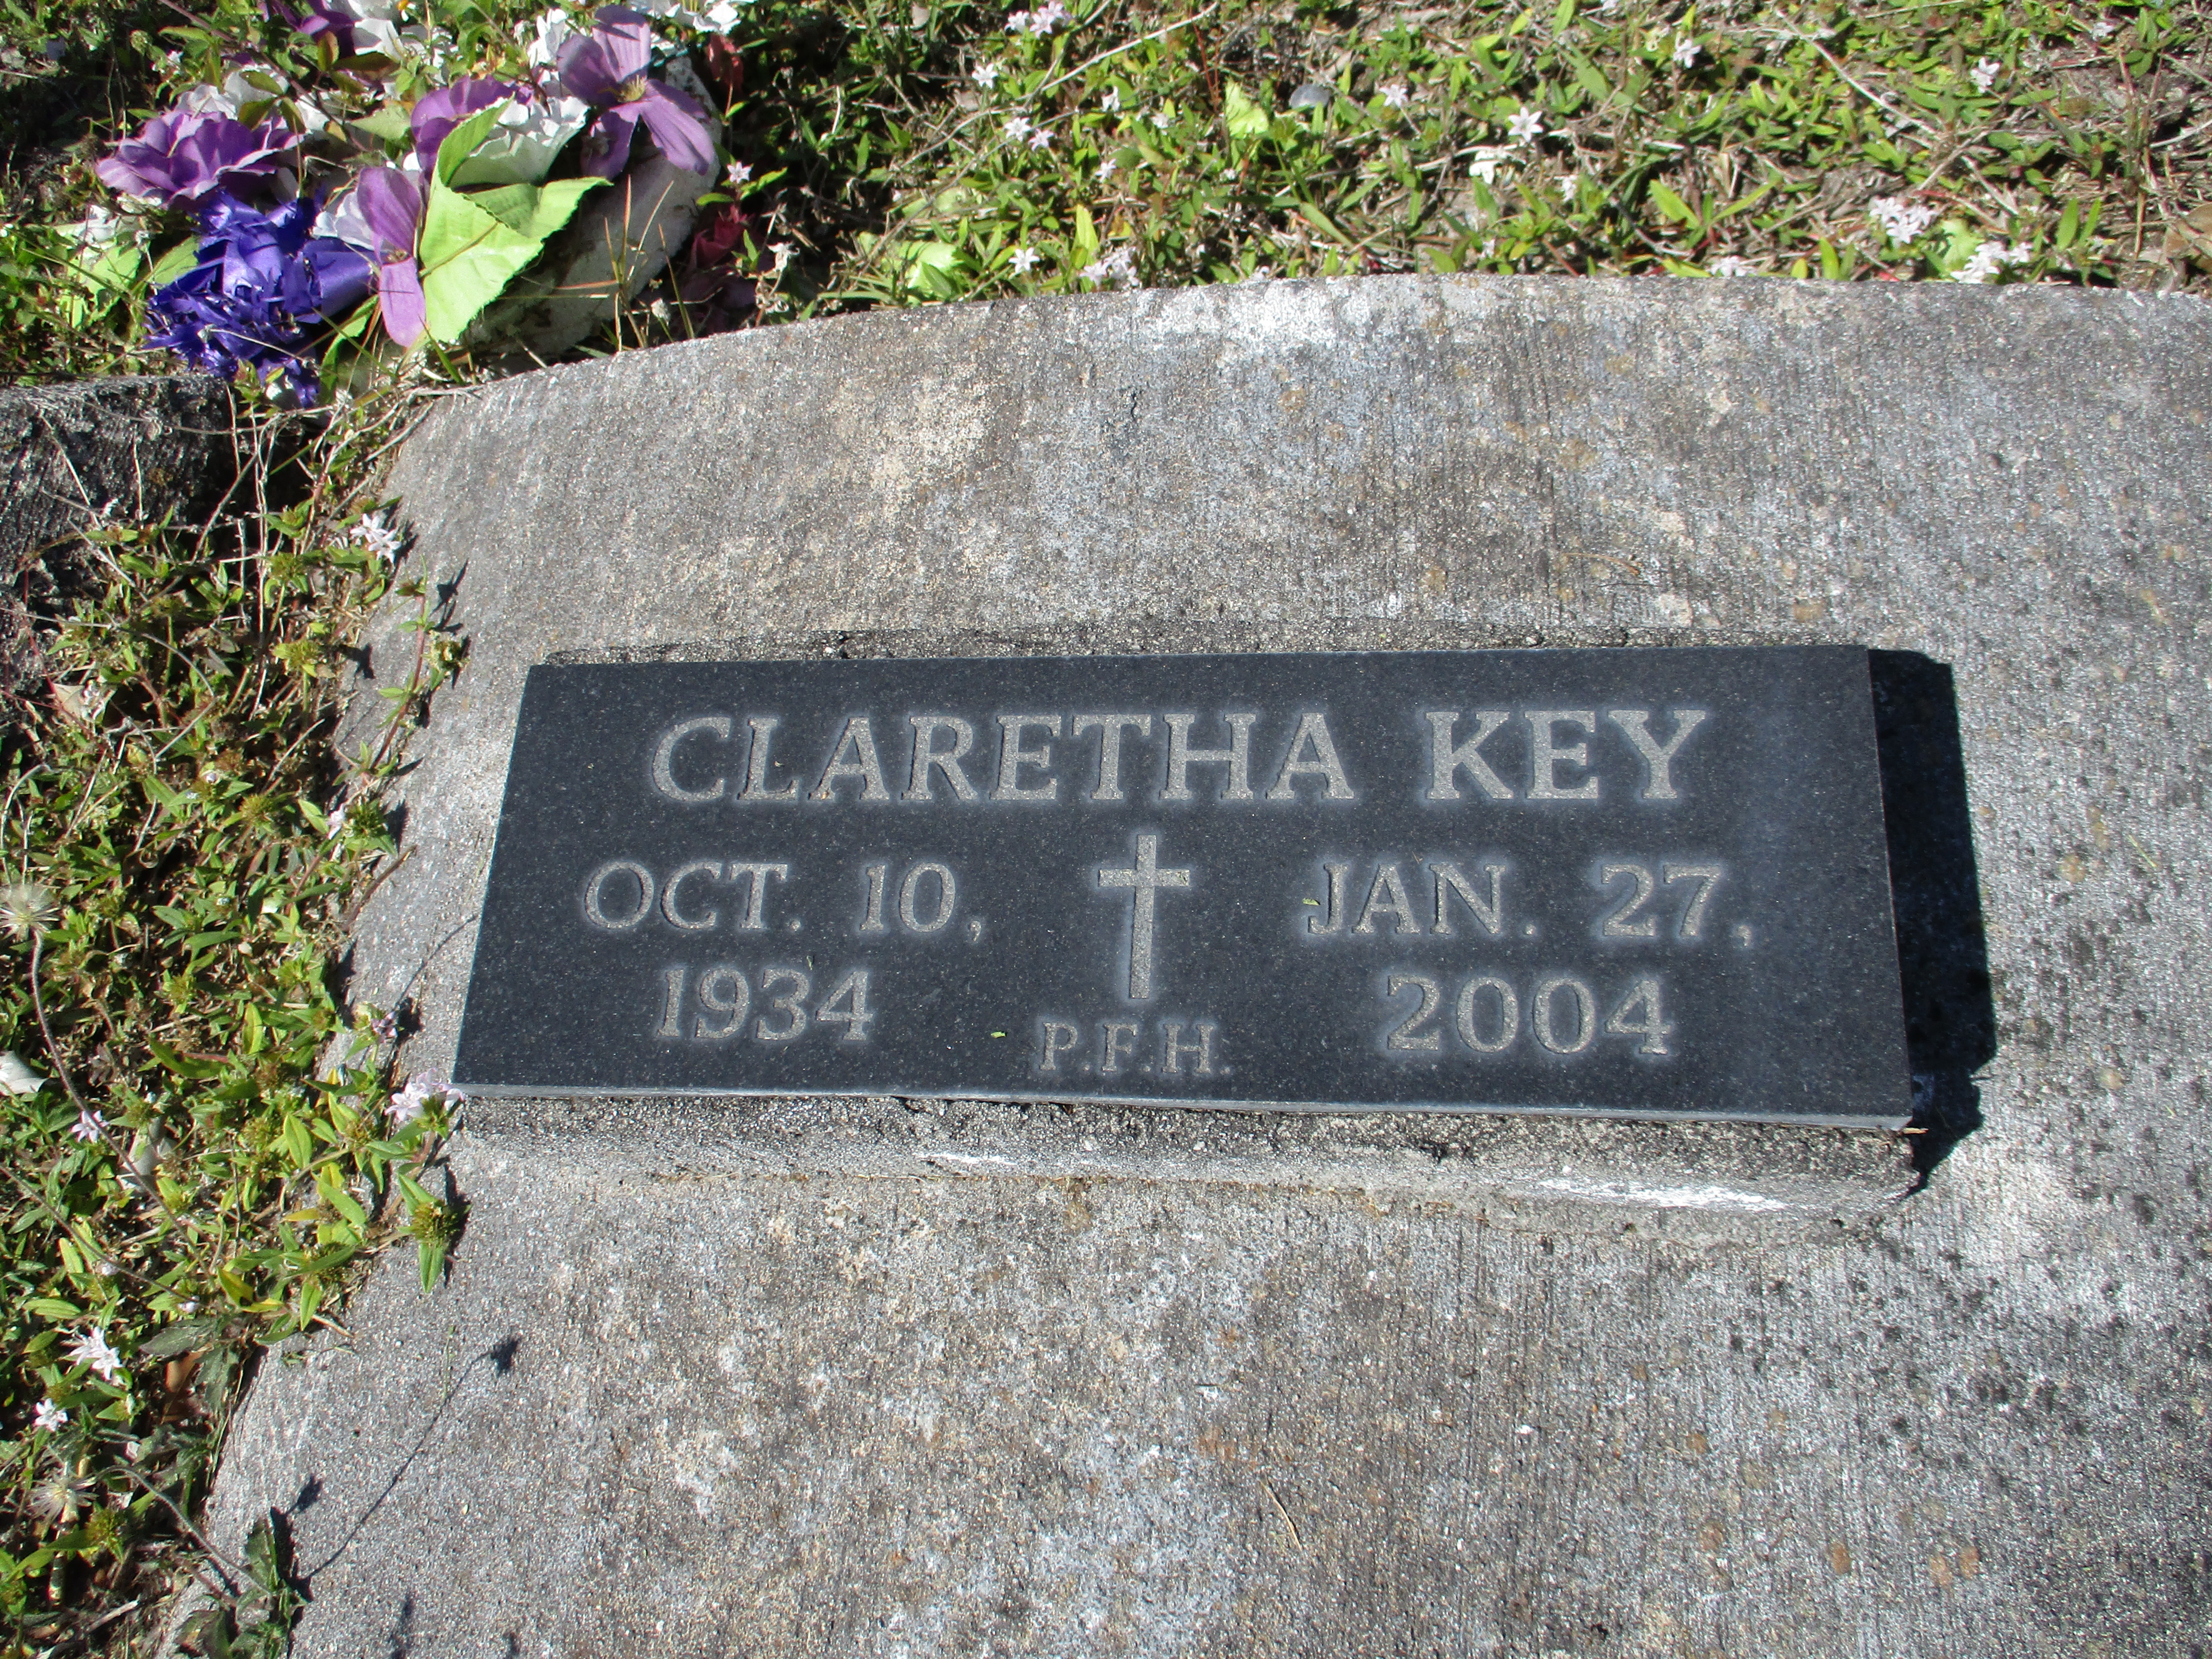 Claretha Key